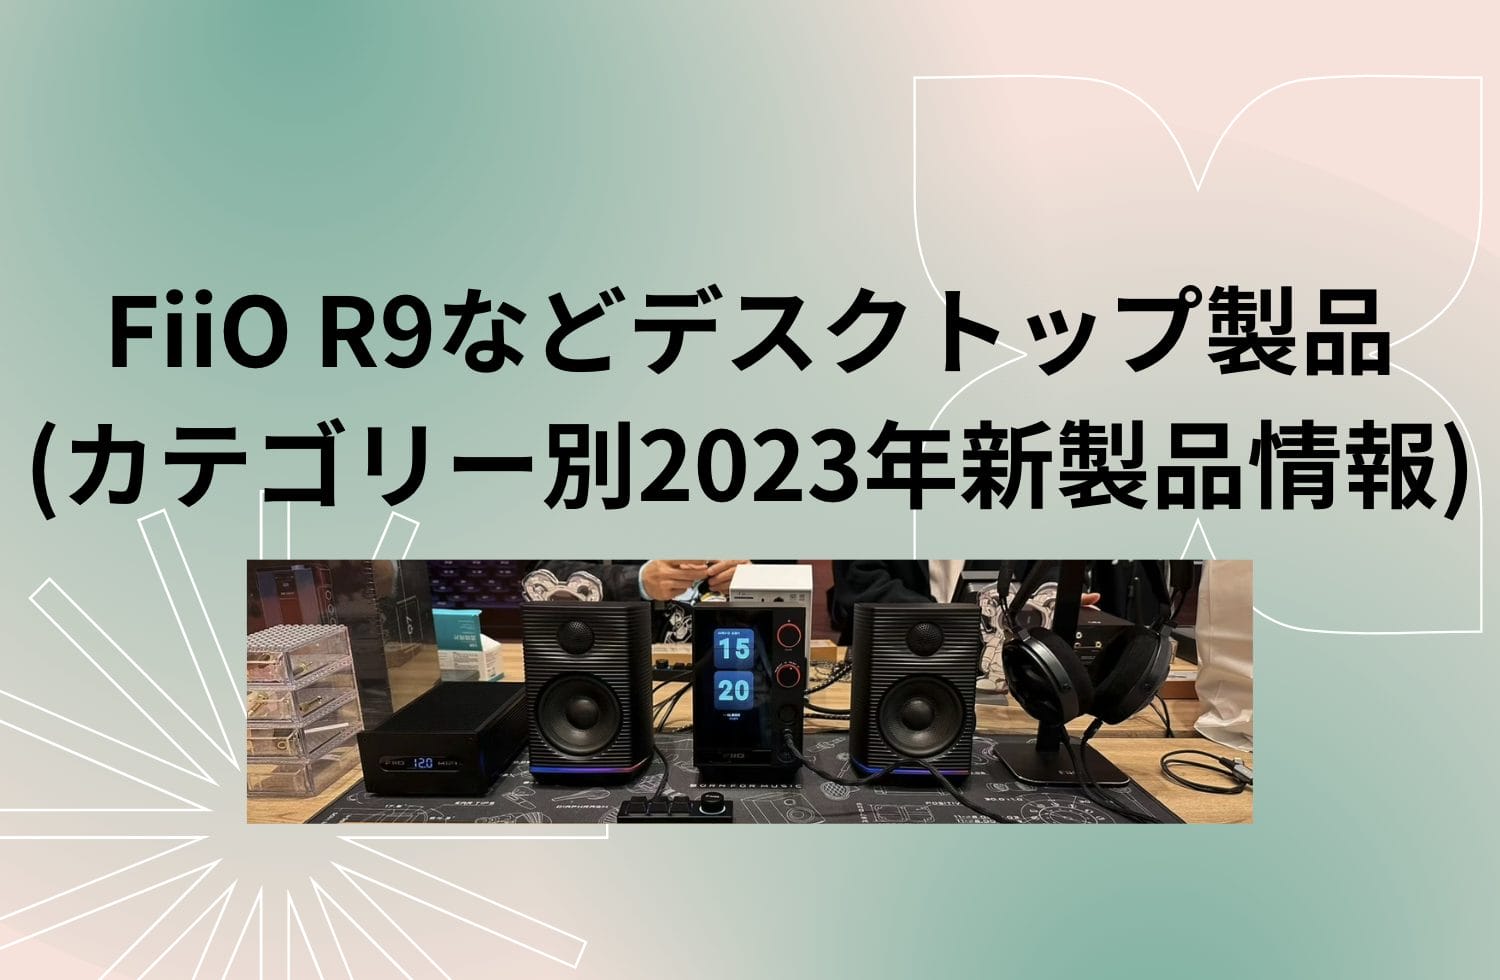 Fiio R9などデスクトップ製品 (カテゴリー別2023年新製品情報)